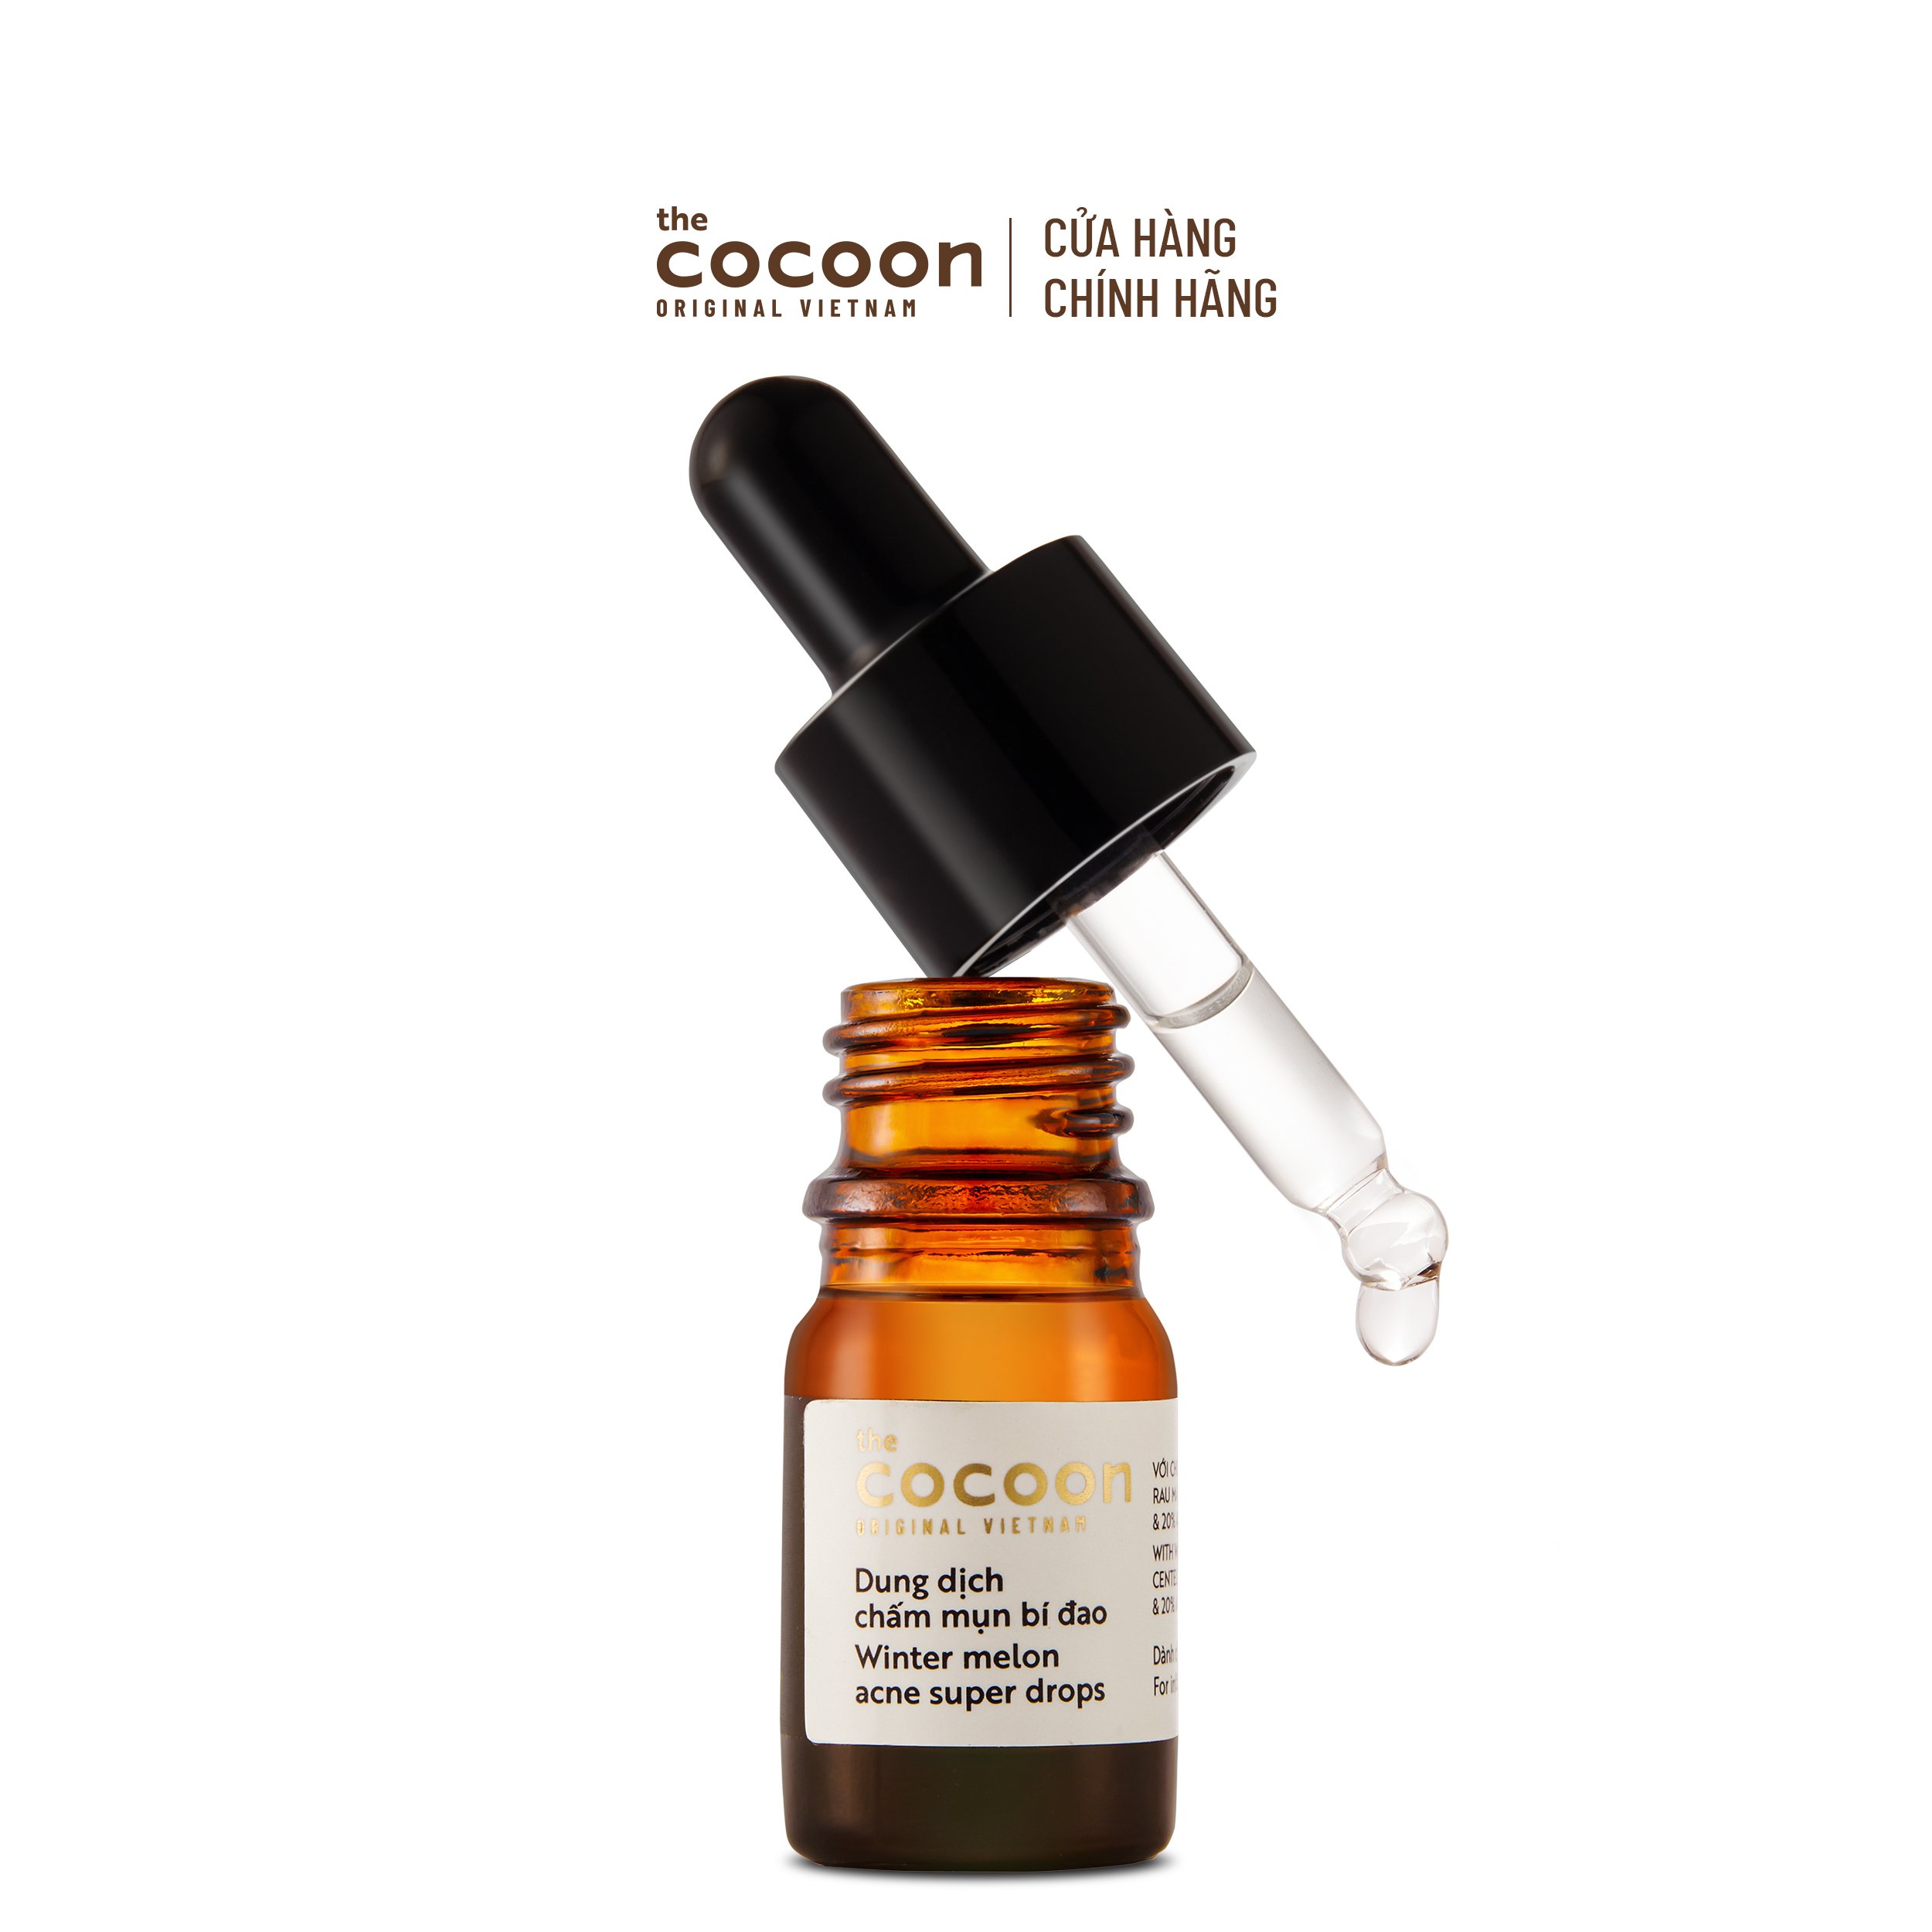 SPECIAL DEAL Tinh chất bí đao (serum) Cocoon sạch mụn chuyên sâu & mờ vết thâm 70ml (tặng 1 dung dịch chấm mụn 5ml)